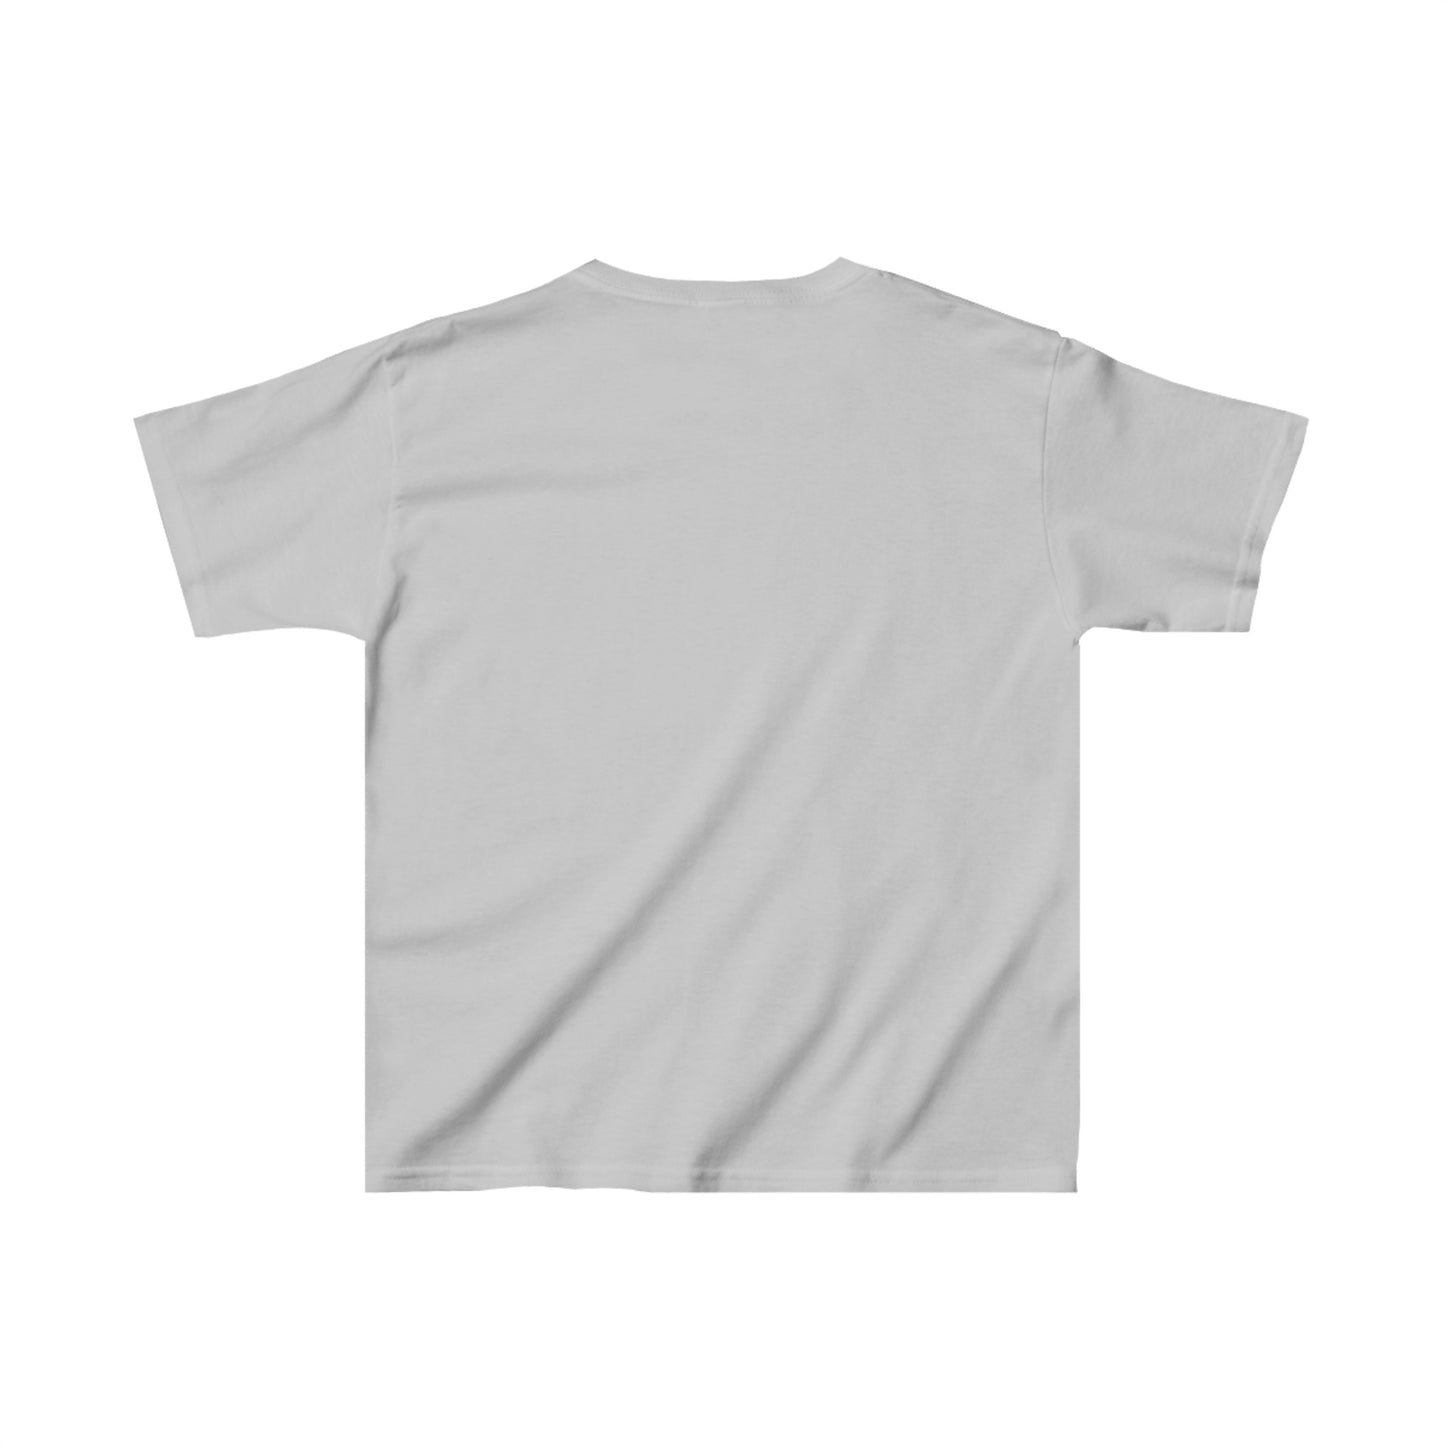 Kids Heavy Cotton Graphic design (Gorilla) T-shirt